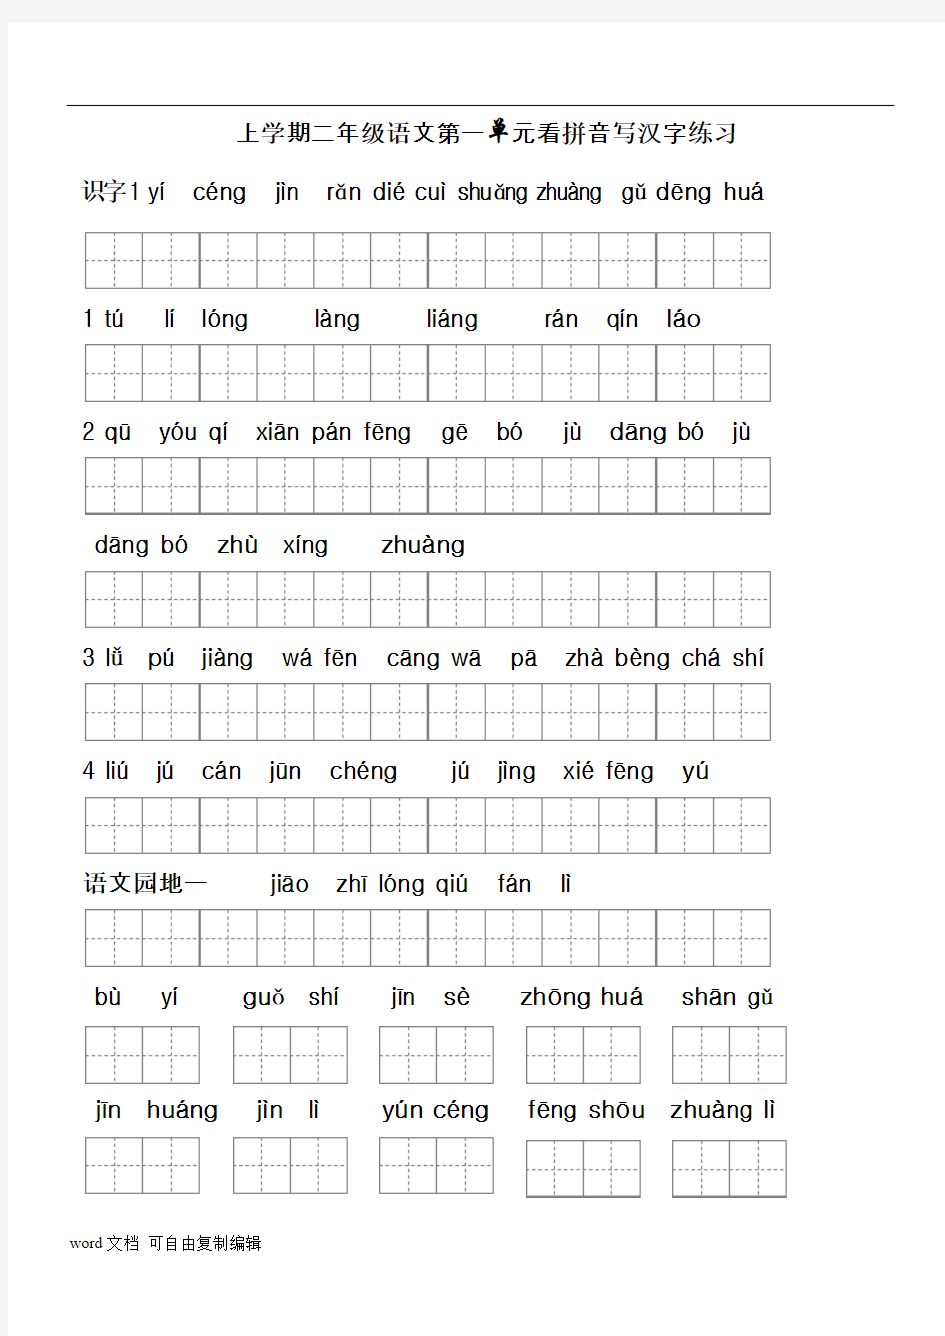 二年级上册生字表(二)看拼音写词语1-2带田字格